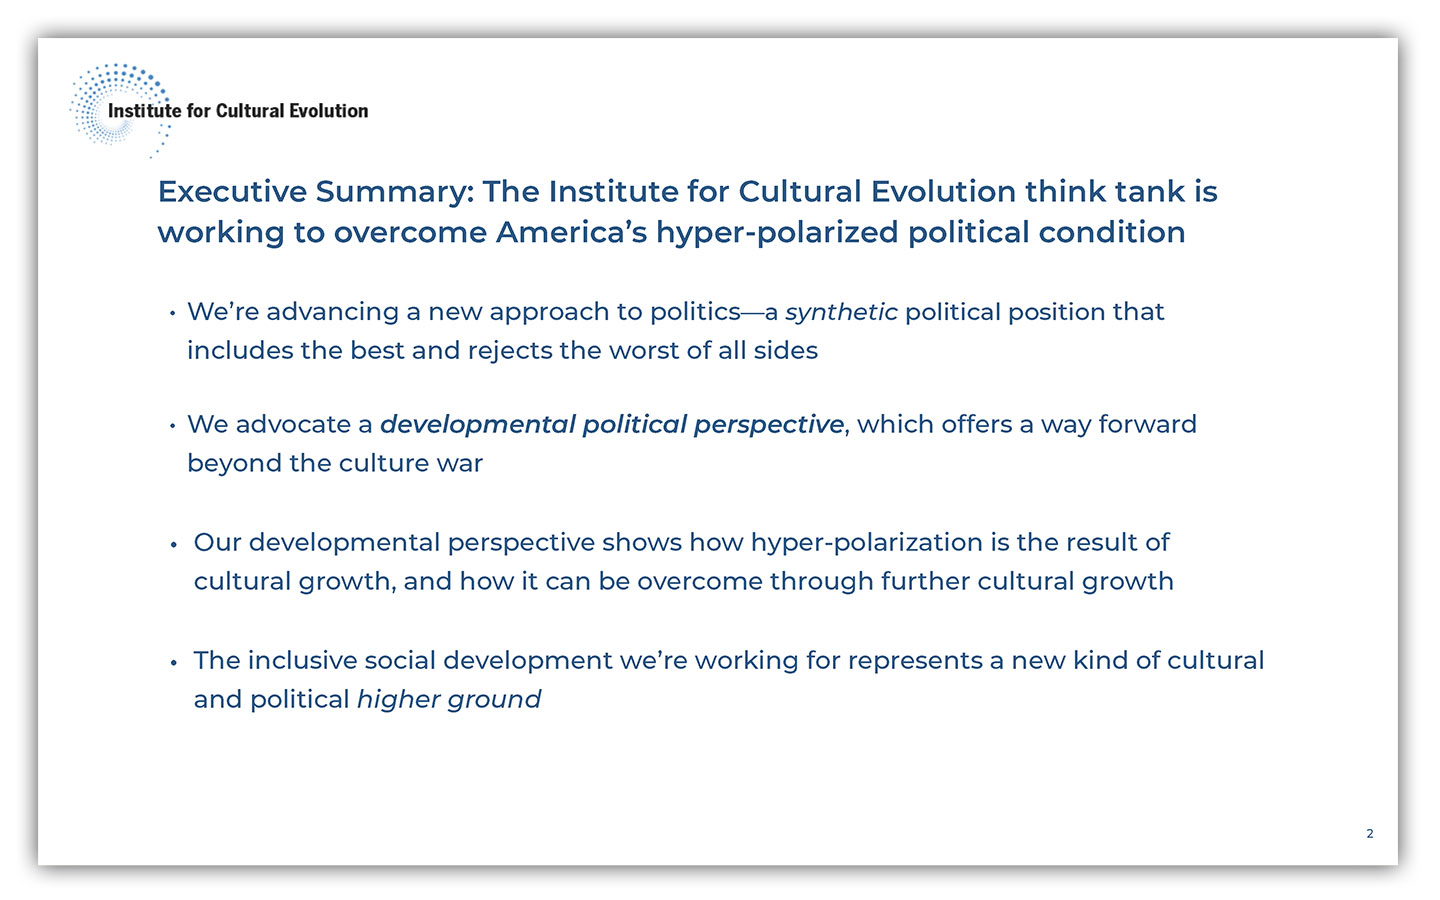 institute-for-cultural-evolution-presentation-spring-2022-02